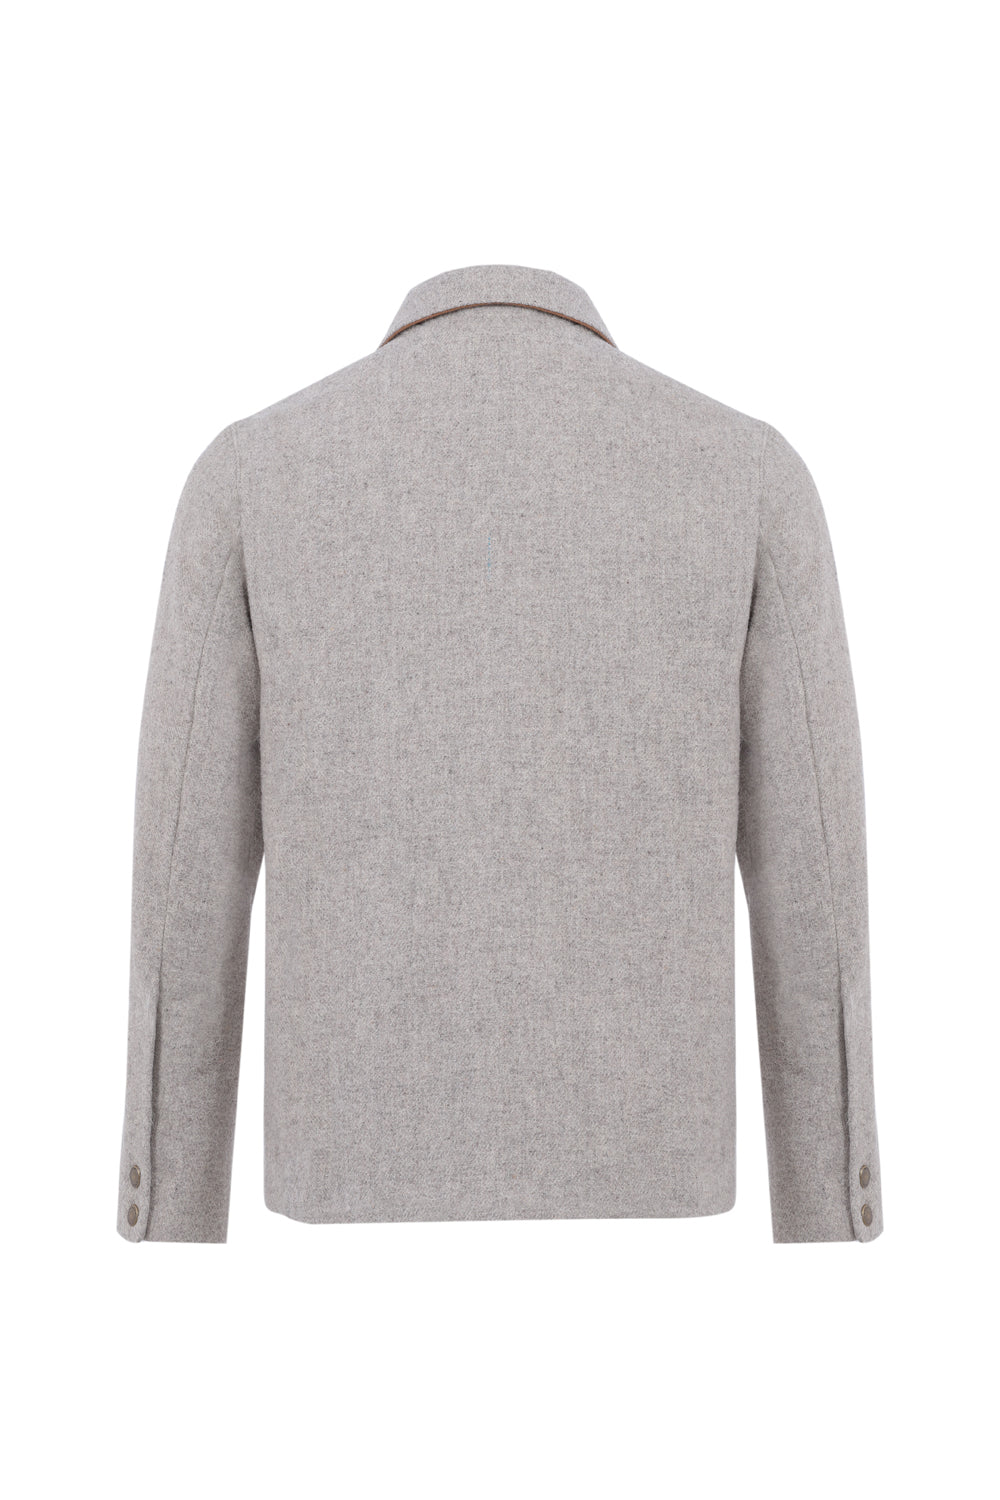 Manteau veste homme éthique et responsable ♻️, gris clair, en 100% laine des Pyrénées et doubure coton, déperlant, made in France 🇫🇷, maison izard.